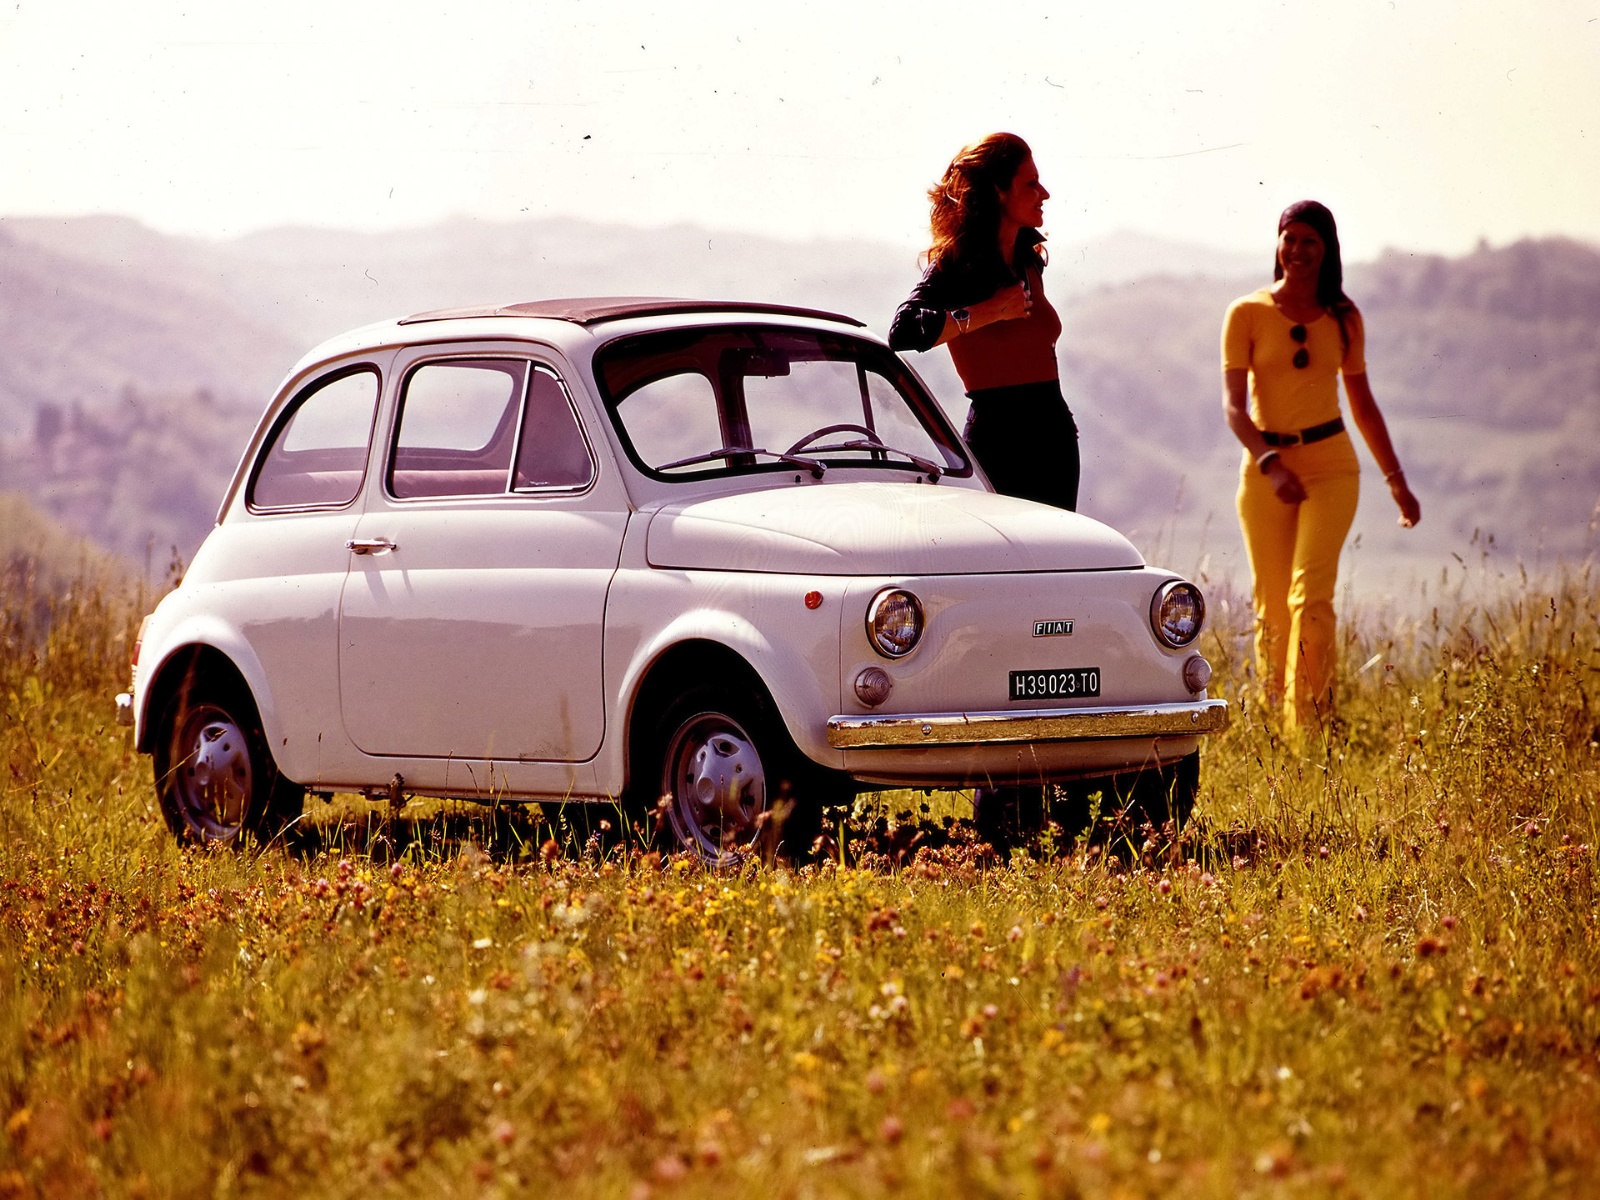 1969 Fiat 500